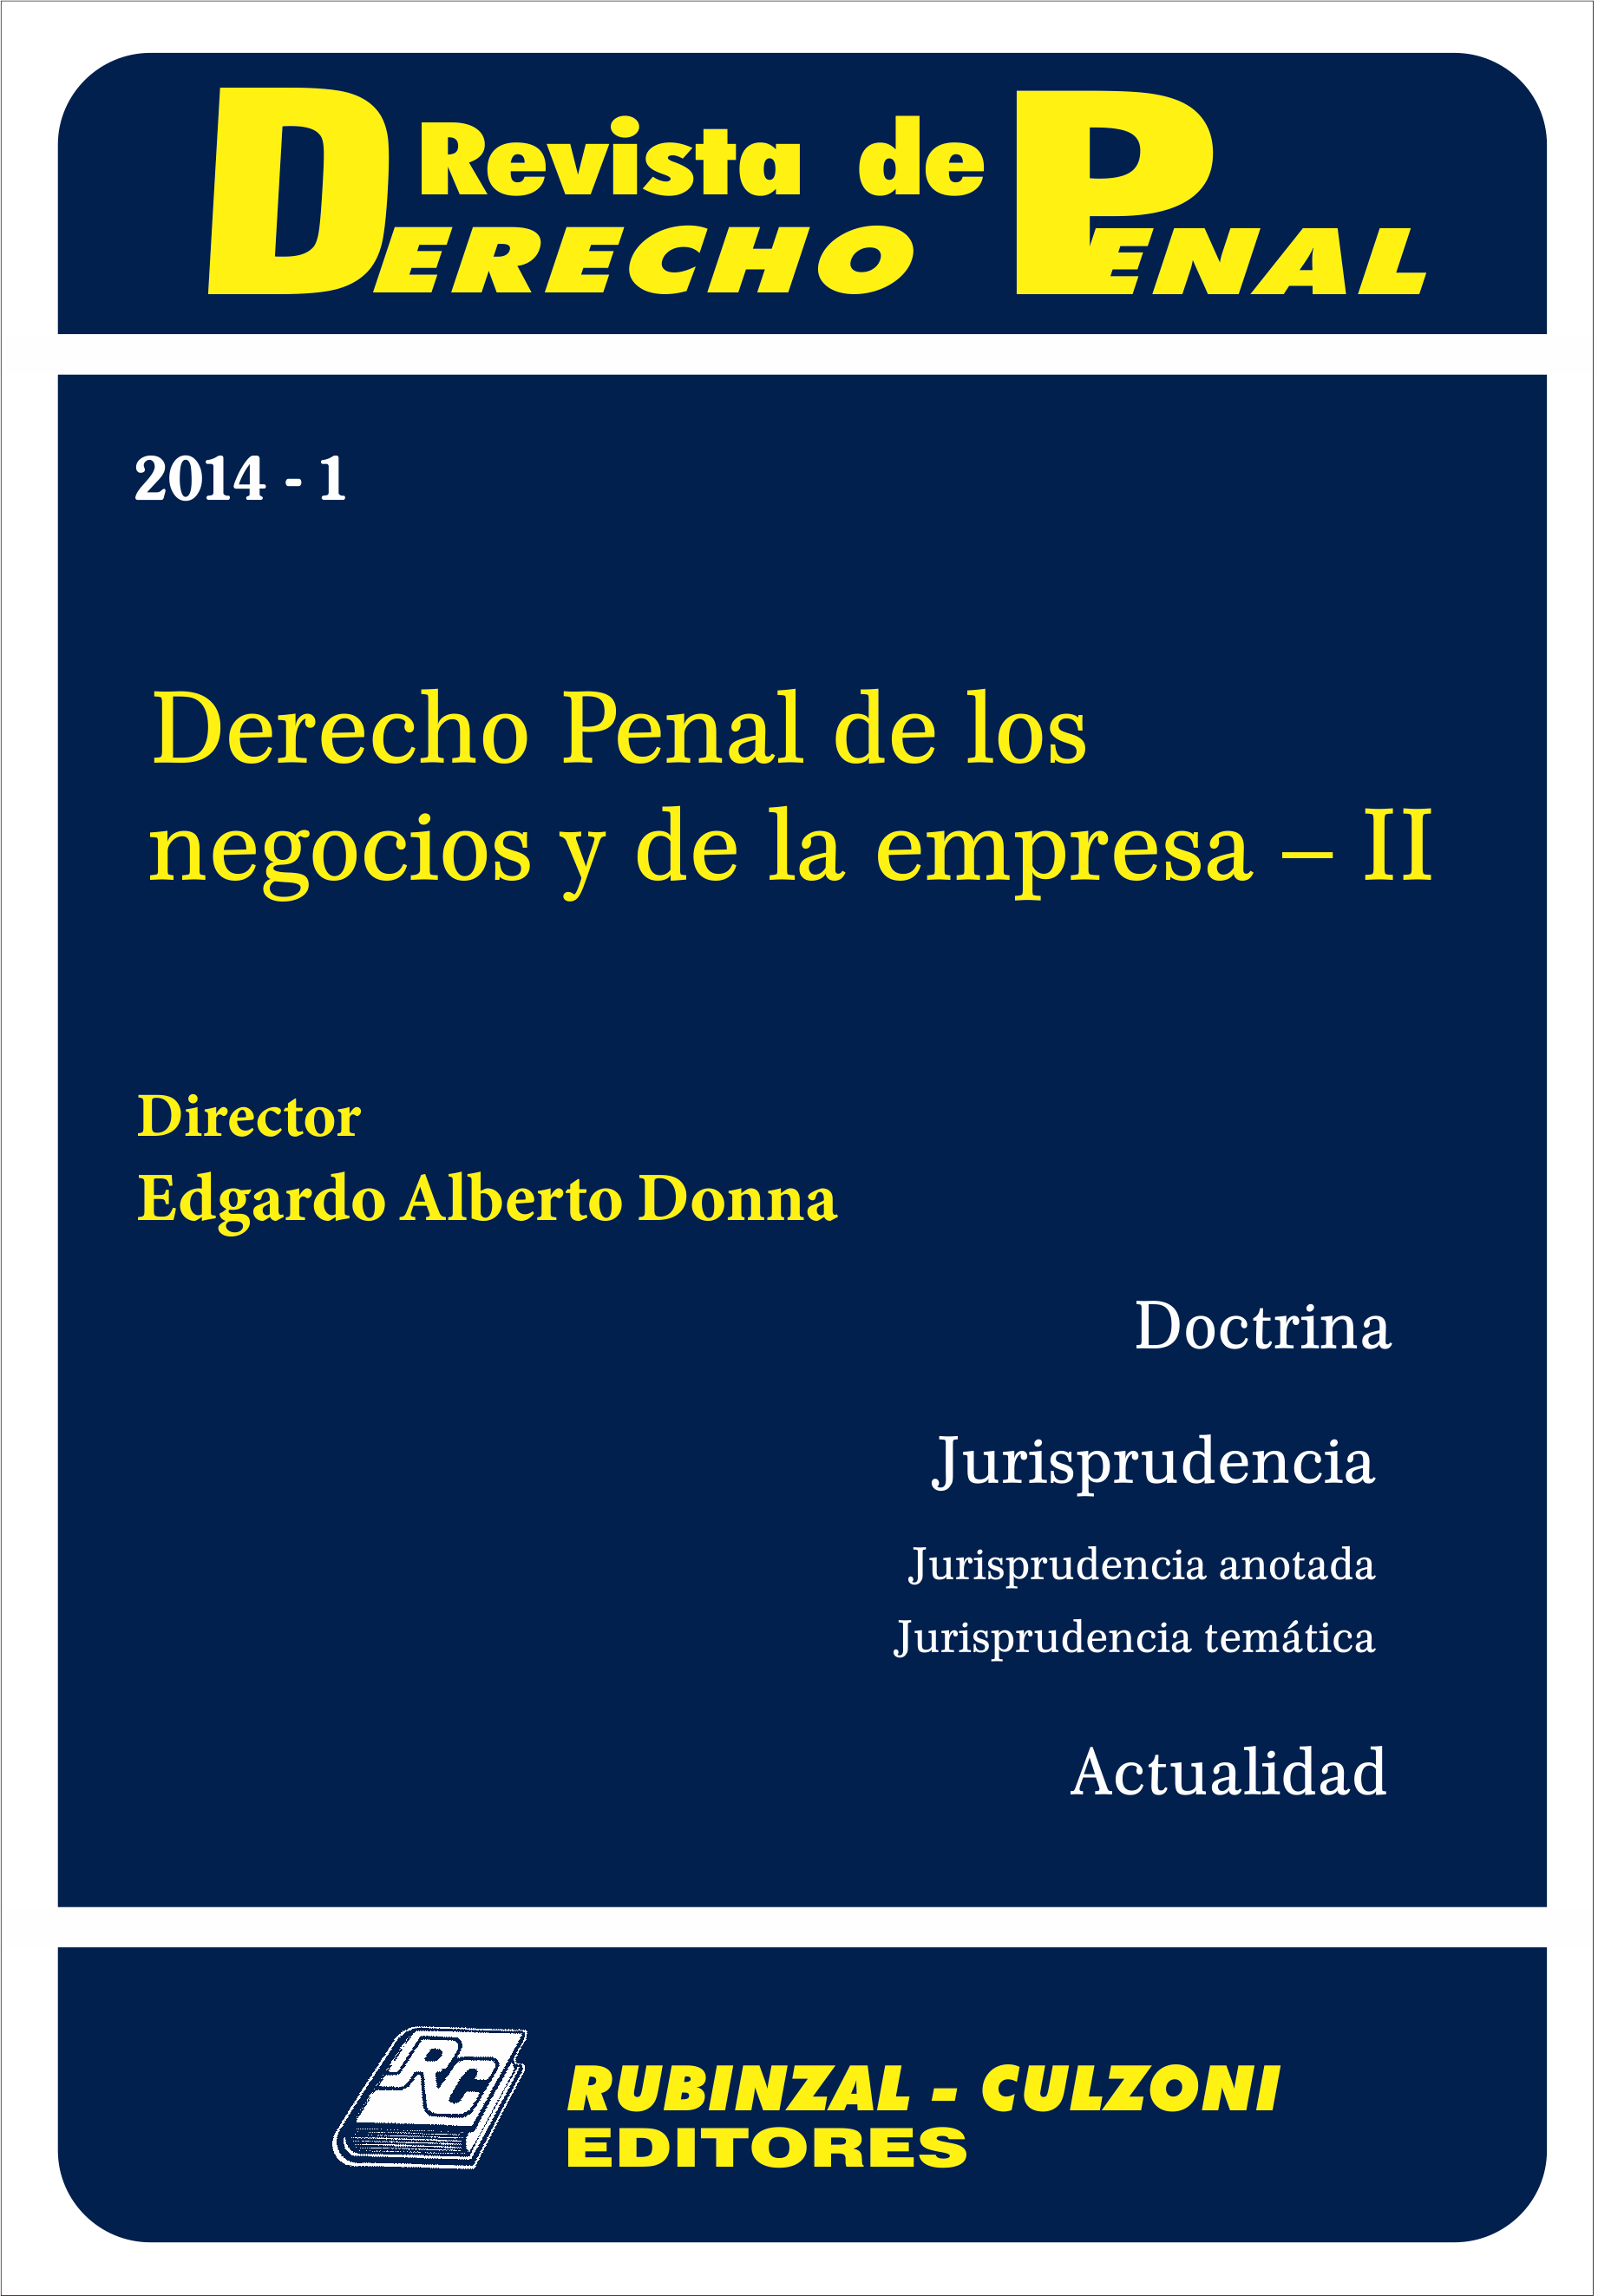 Revista de Derecho Penal - Derecho Penal de los negocios y de la empresa - II.